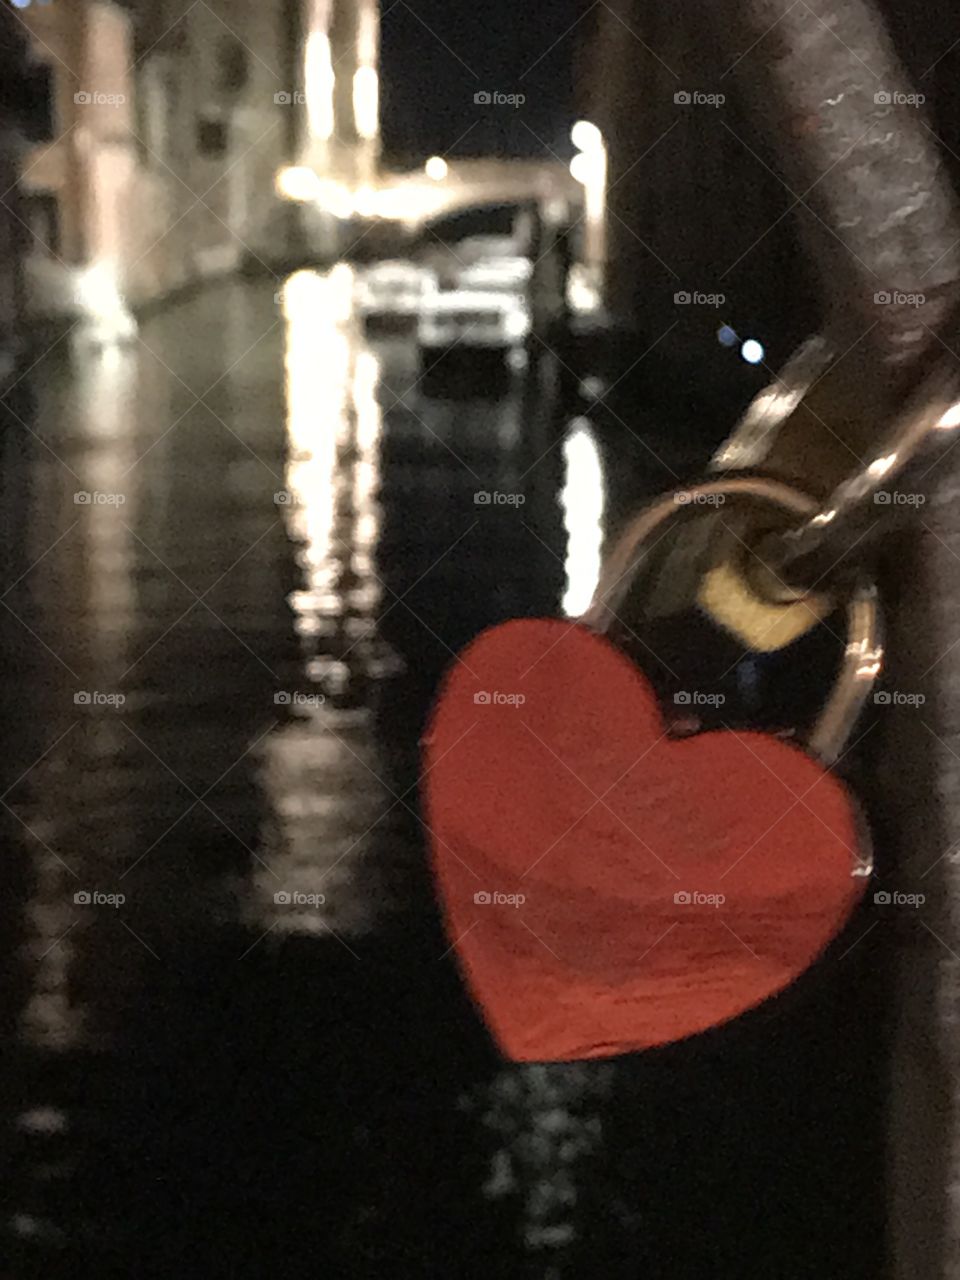 Love Lock in Focus in Venice 